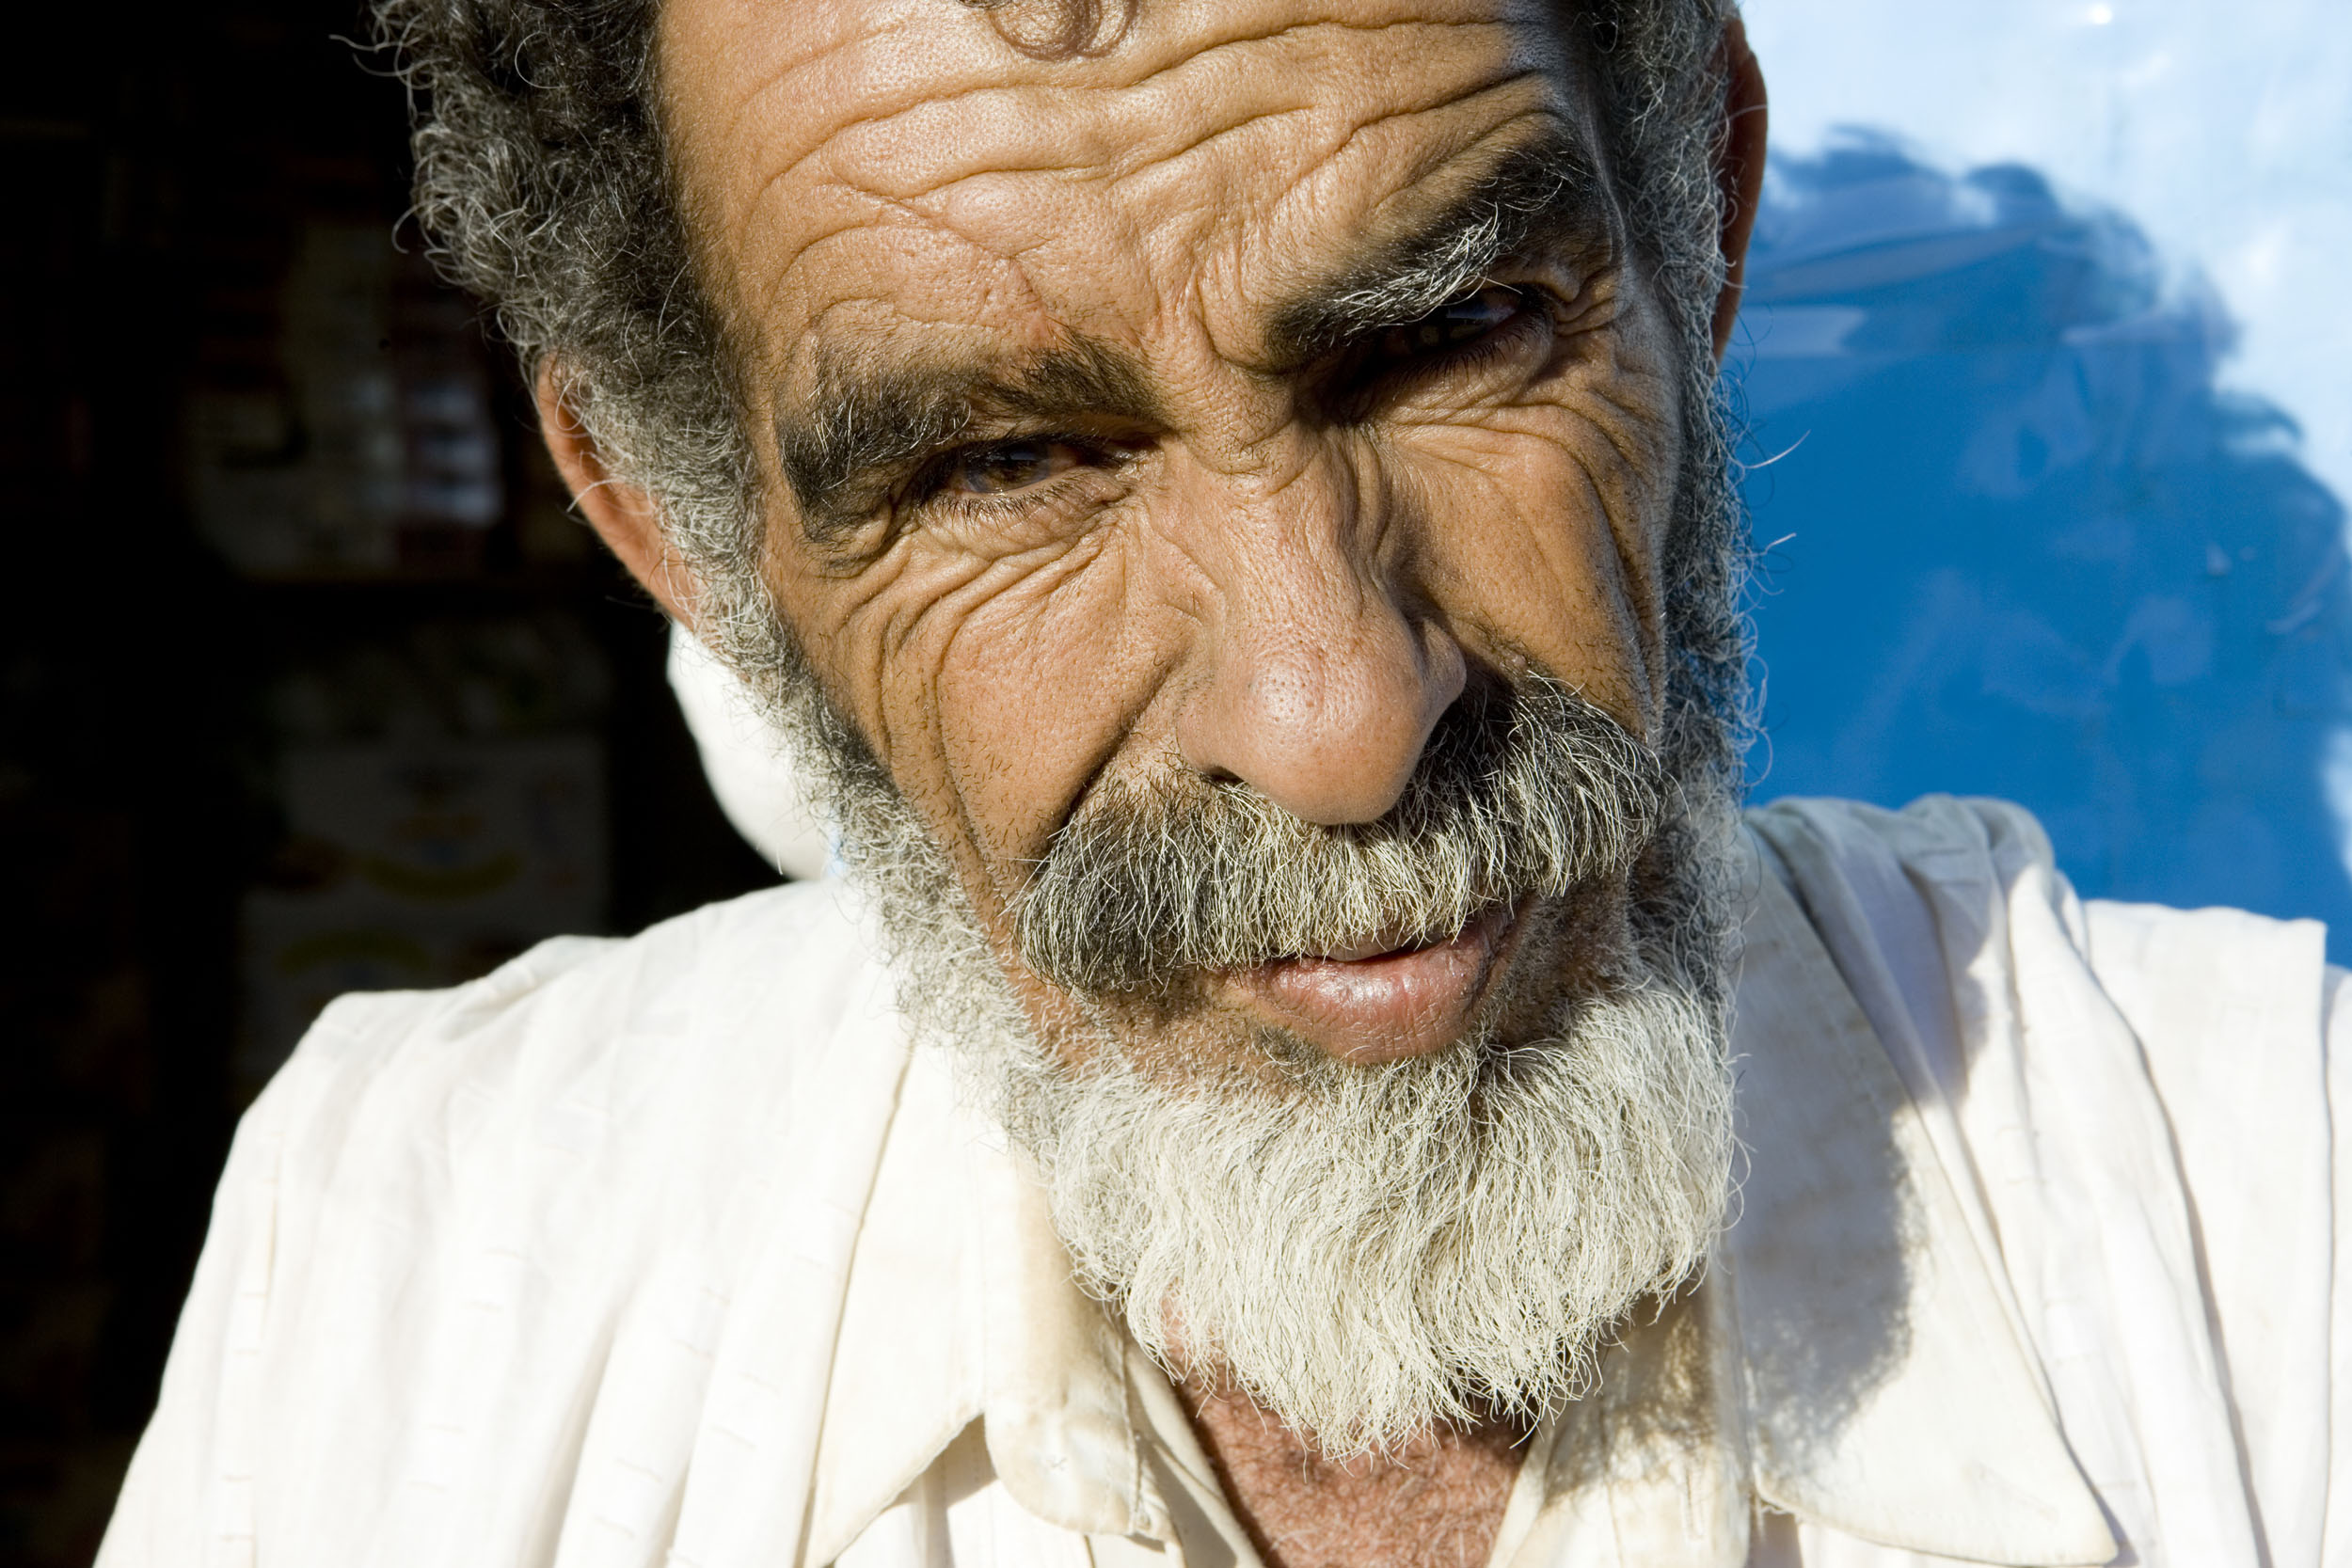 Portrait en gros plan d'un homme devant sa maison réalisé lors d'un voyage en Mauritanie.